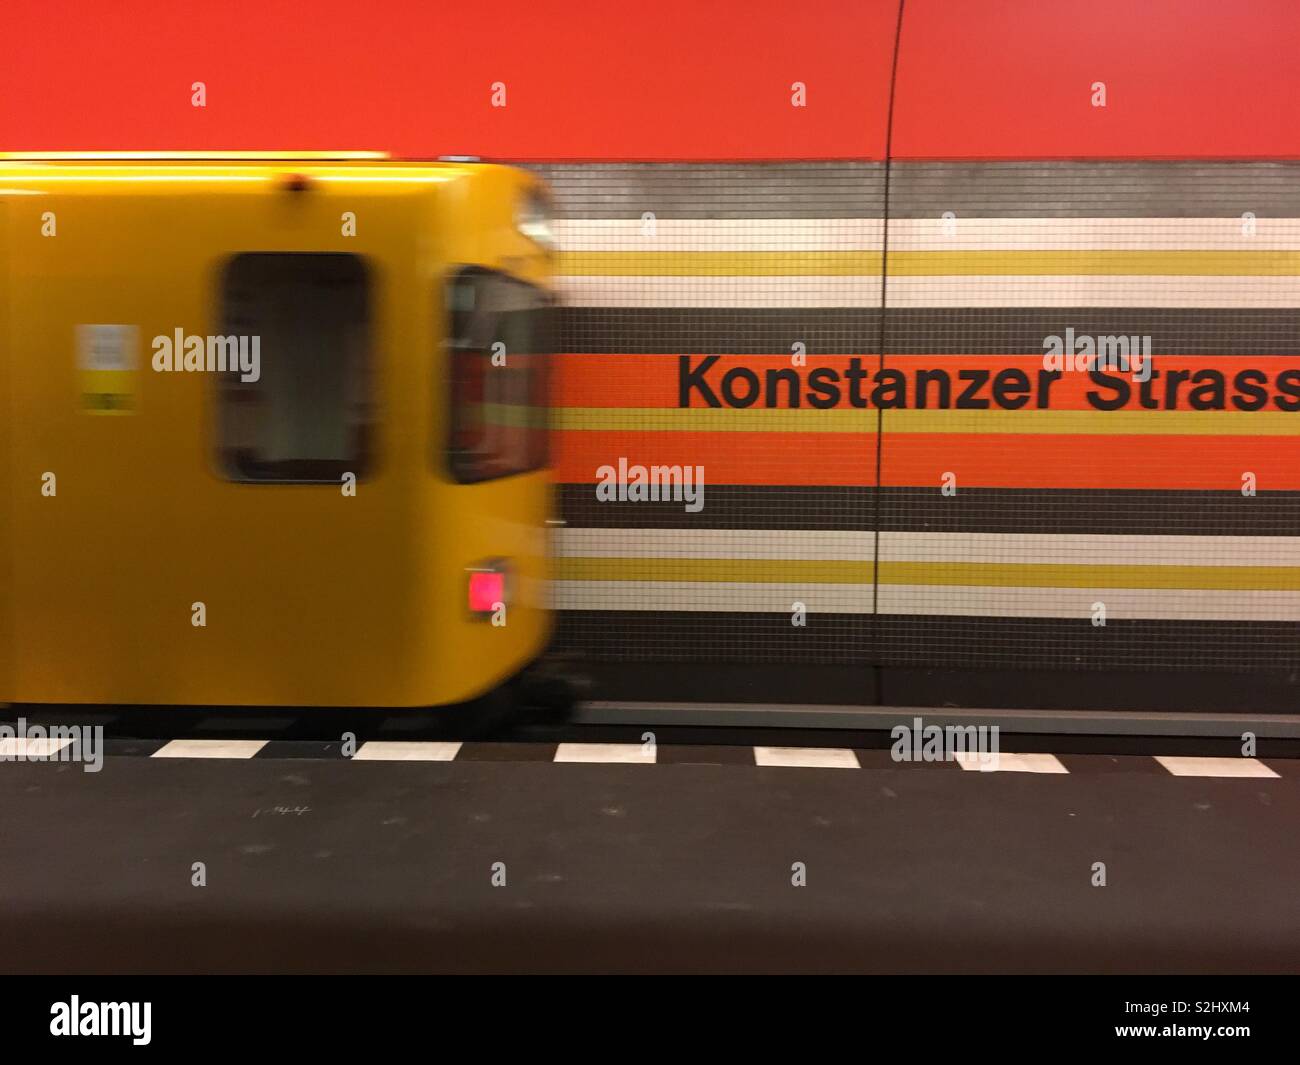 Berlin UBahn Stazione Konstanzer Strasse Foto Stock